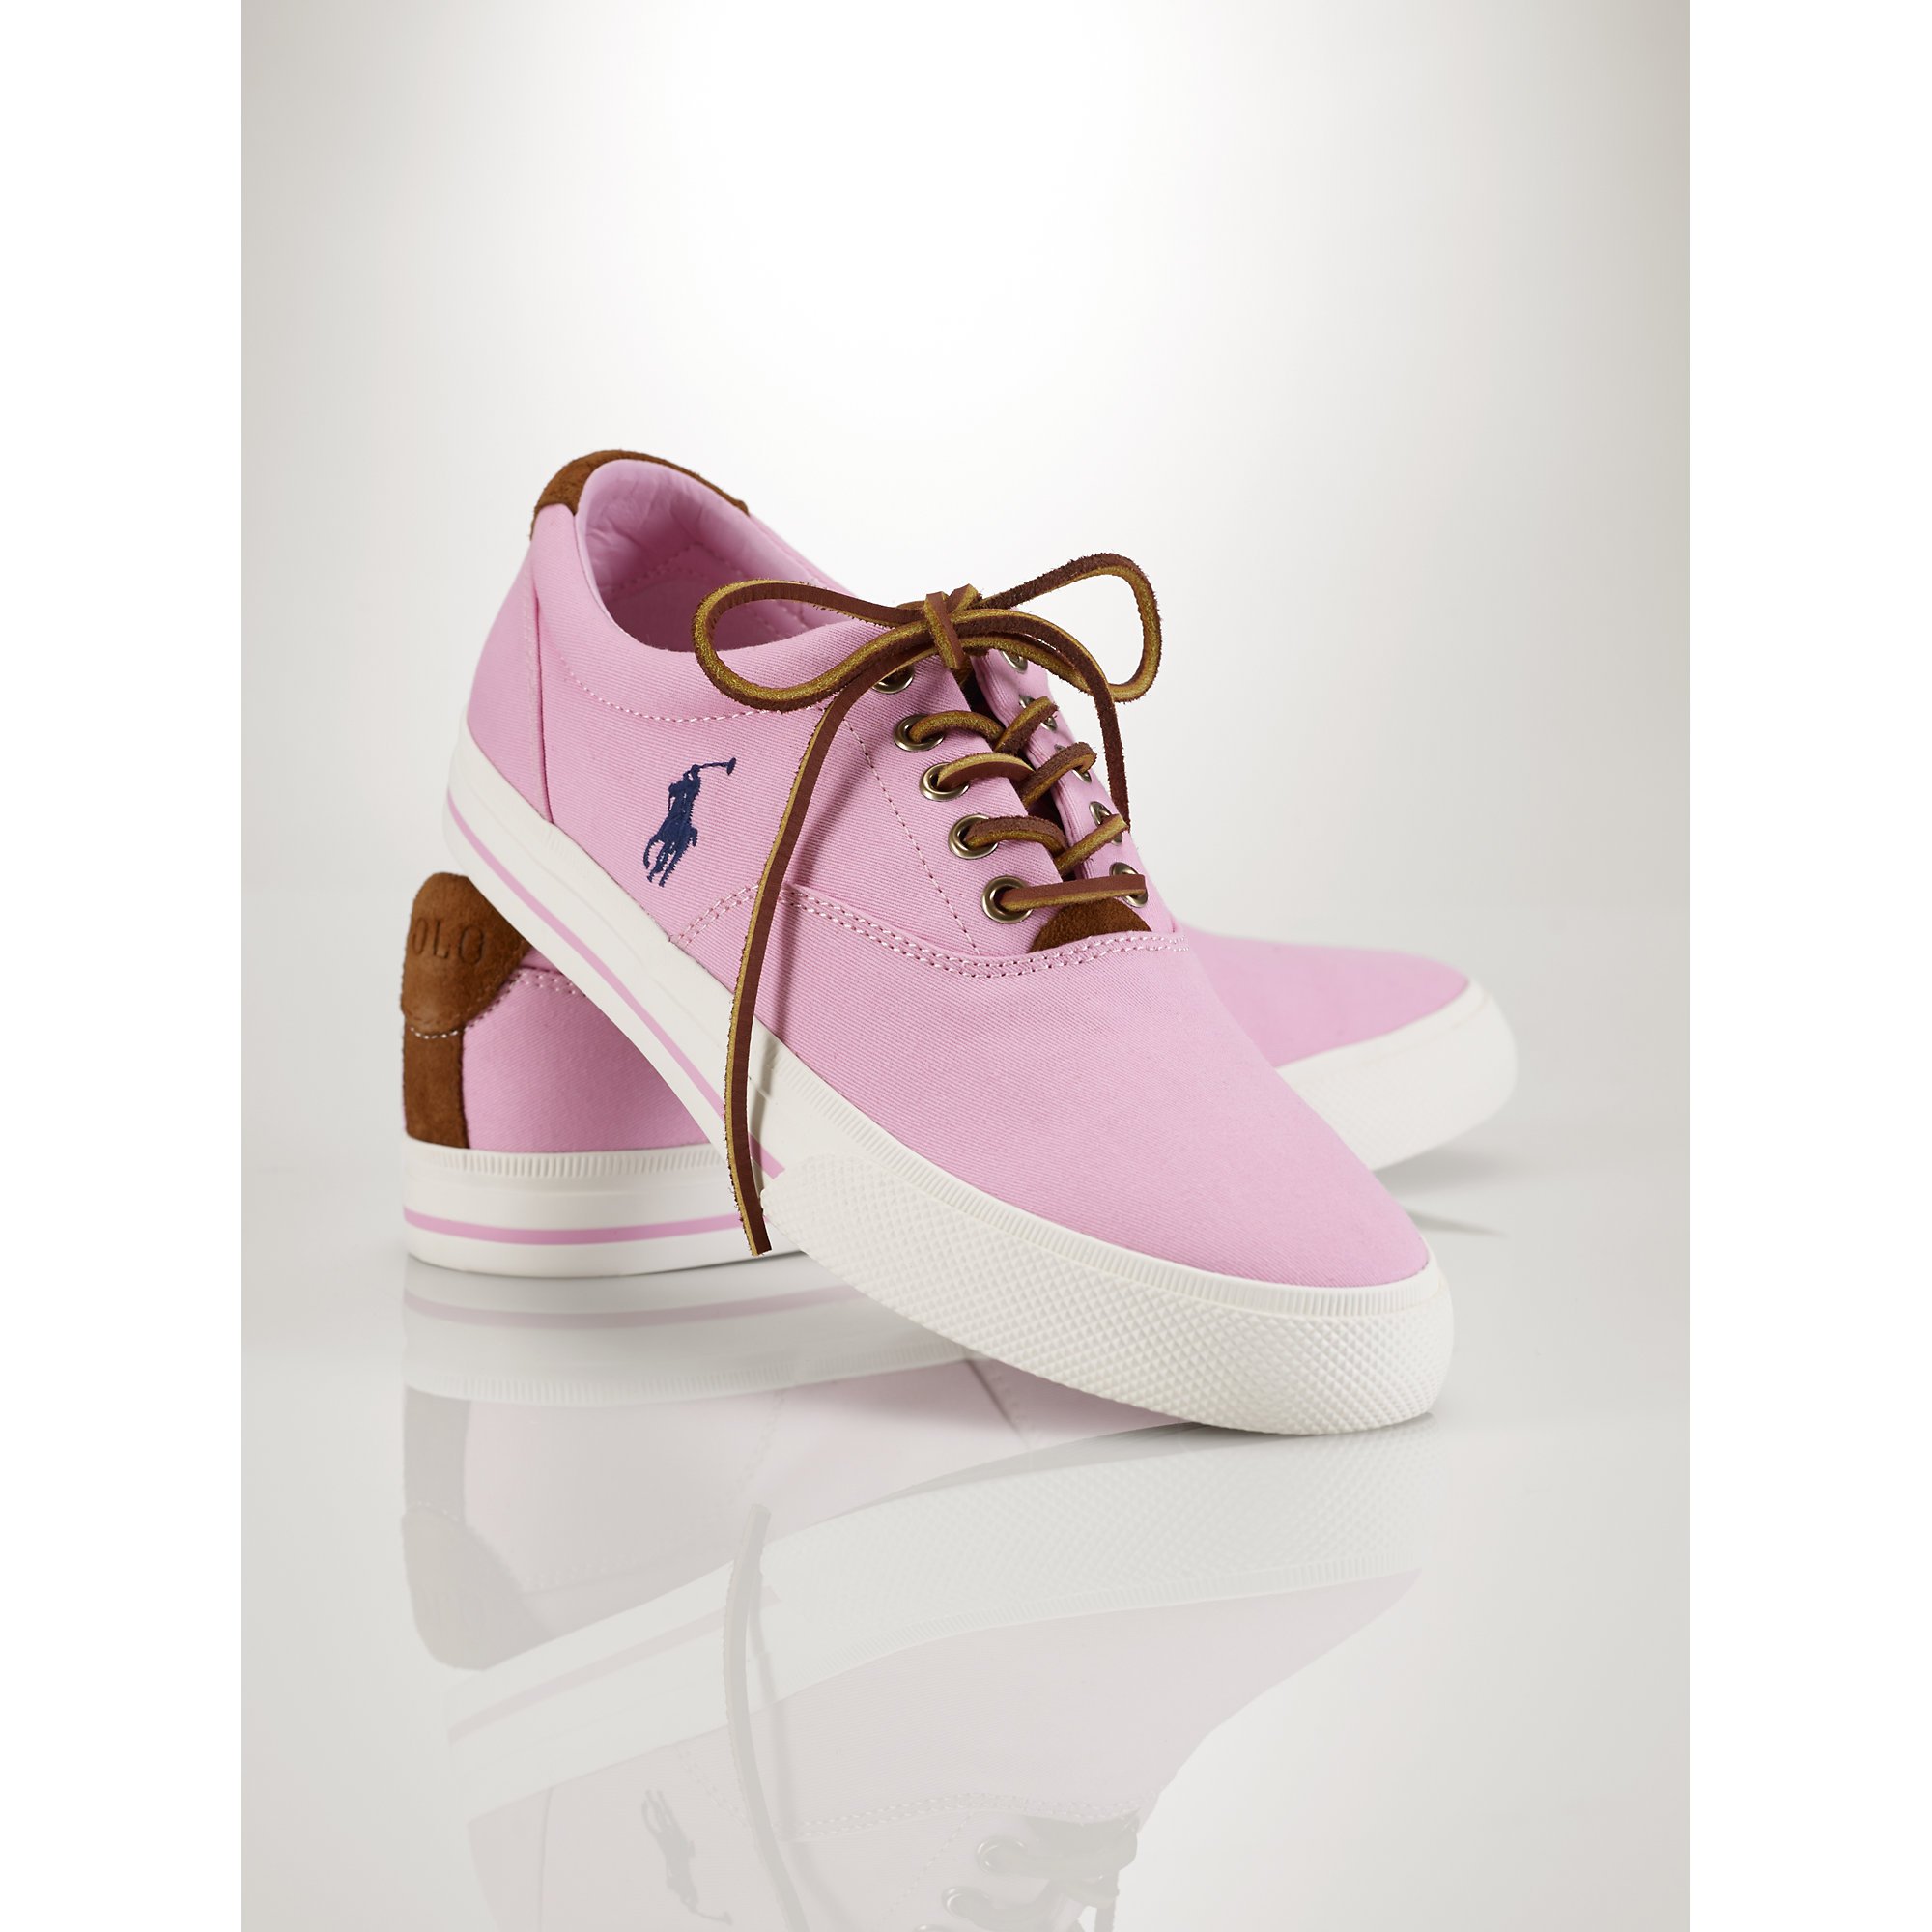 Polo Ralph Lauren Vaughn Preppy Chino Sneaker in Pink for Men - Lyst